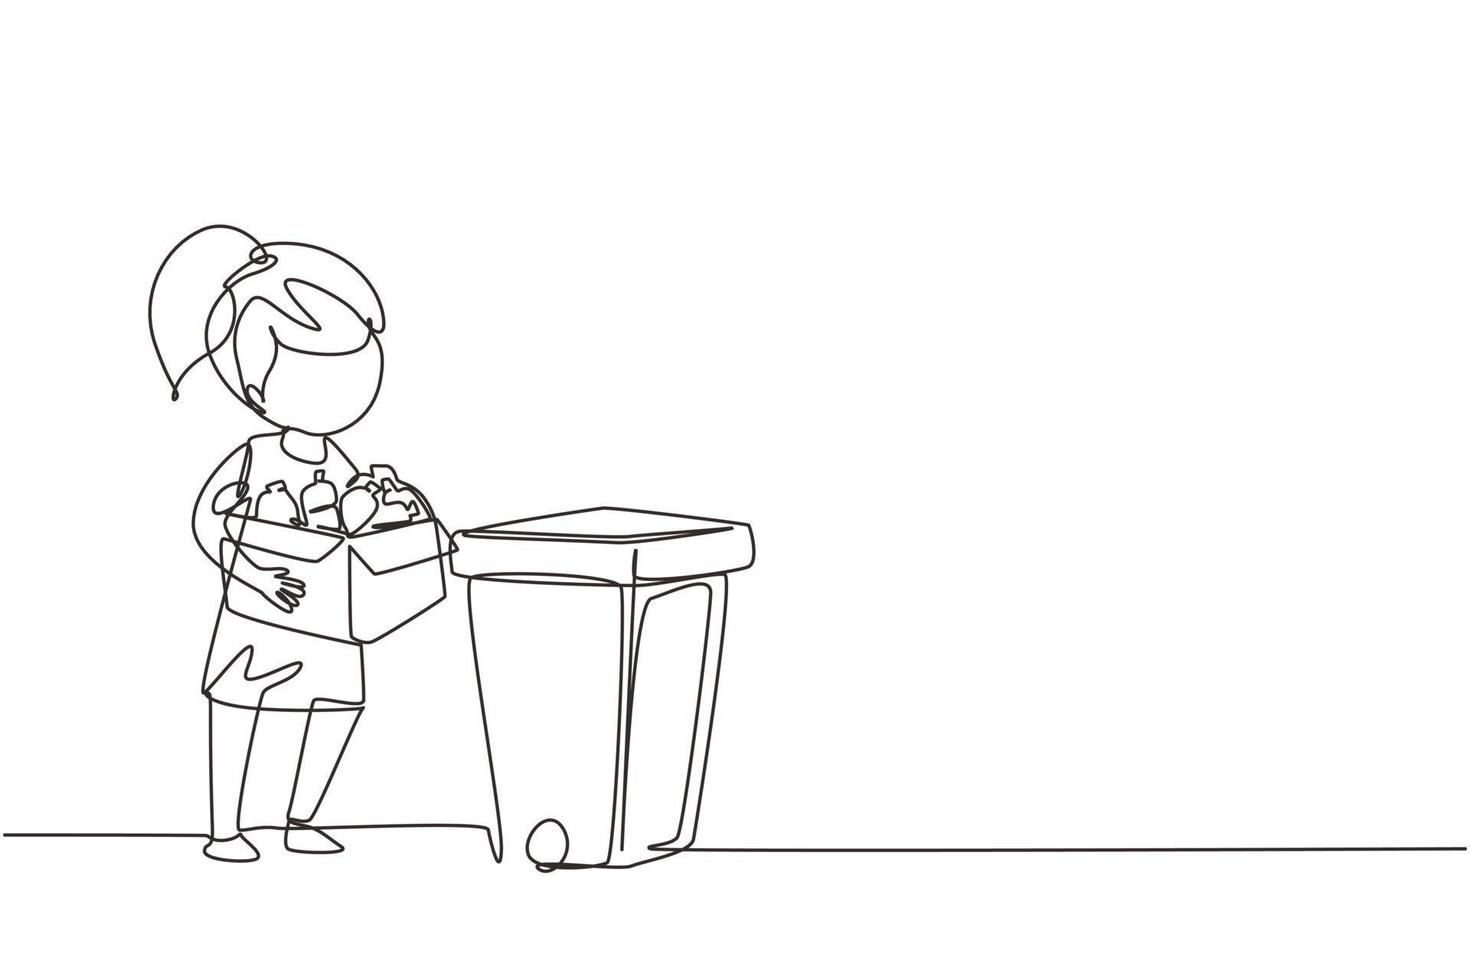 única garota de desenho de linha contínua coletando lixo e resíduos plásticos para reciclagem. garoto pegando garrafas plásticas no lixo. educação ecológica. uma linha desenhar ilustração em vetor design gráfico